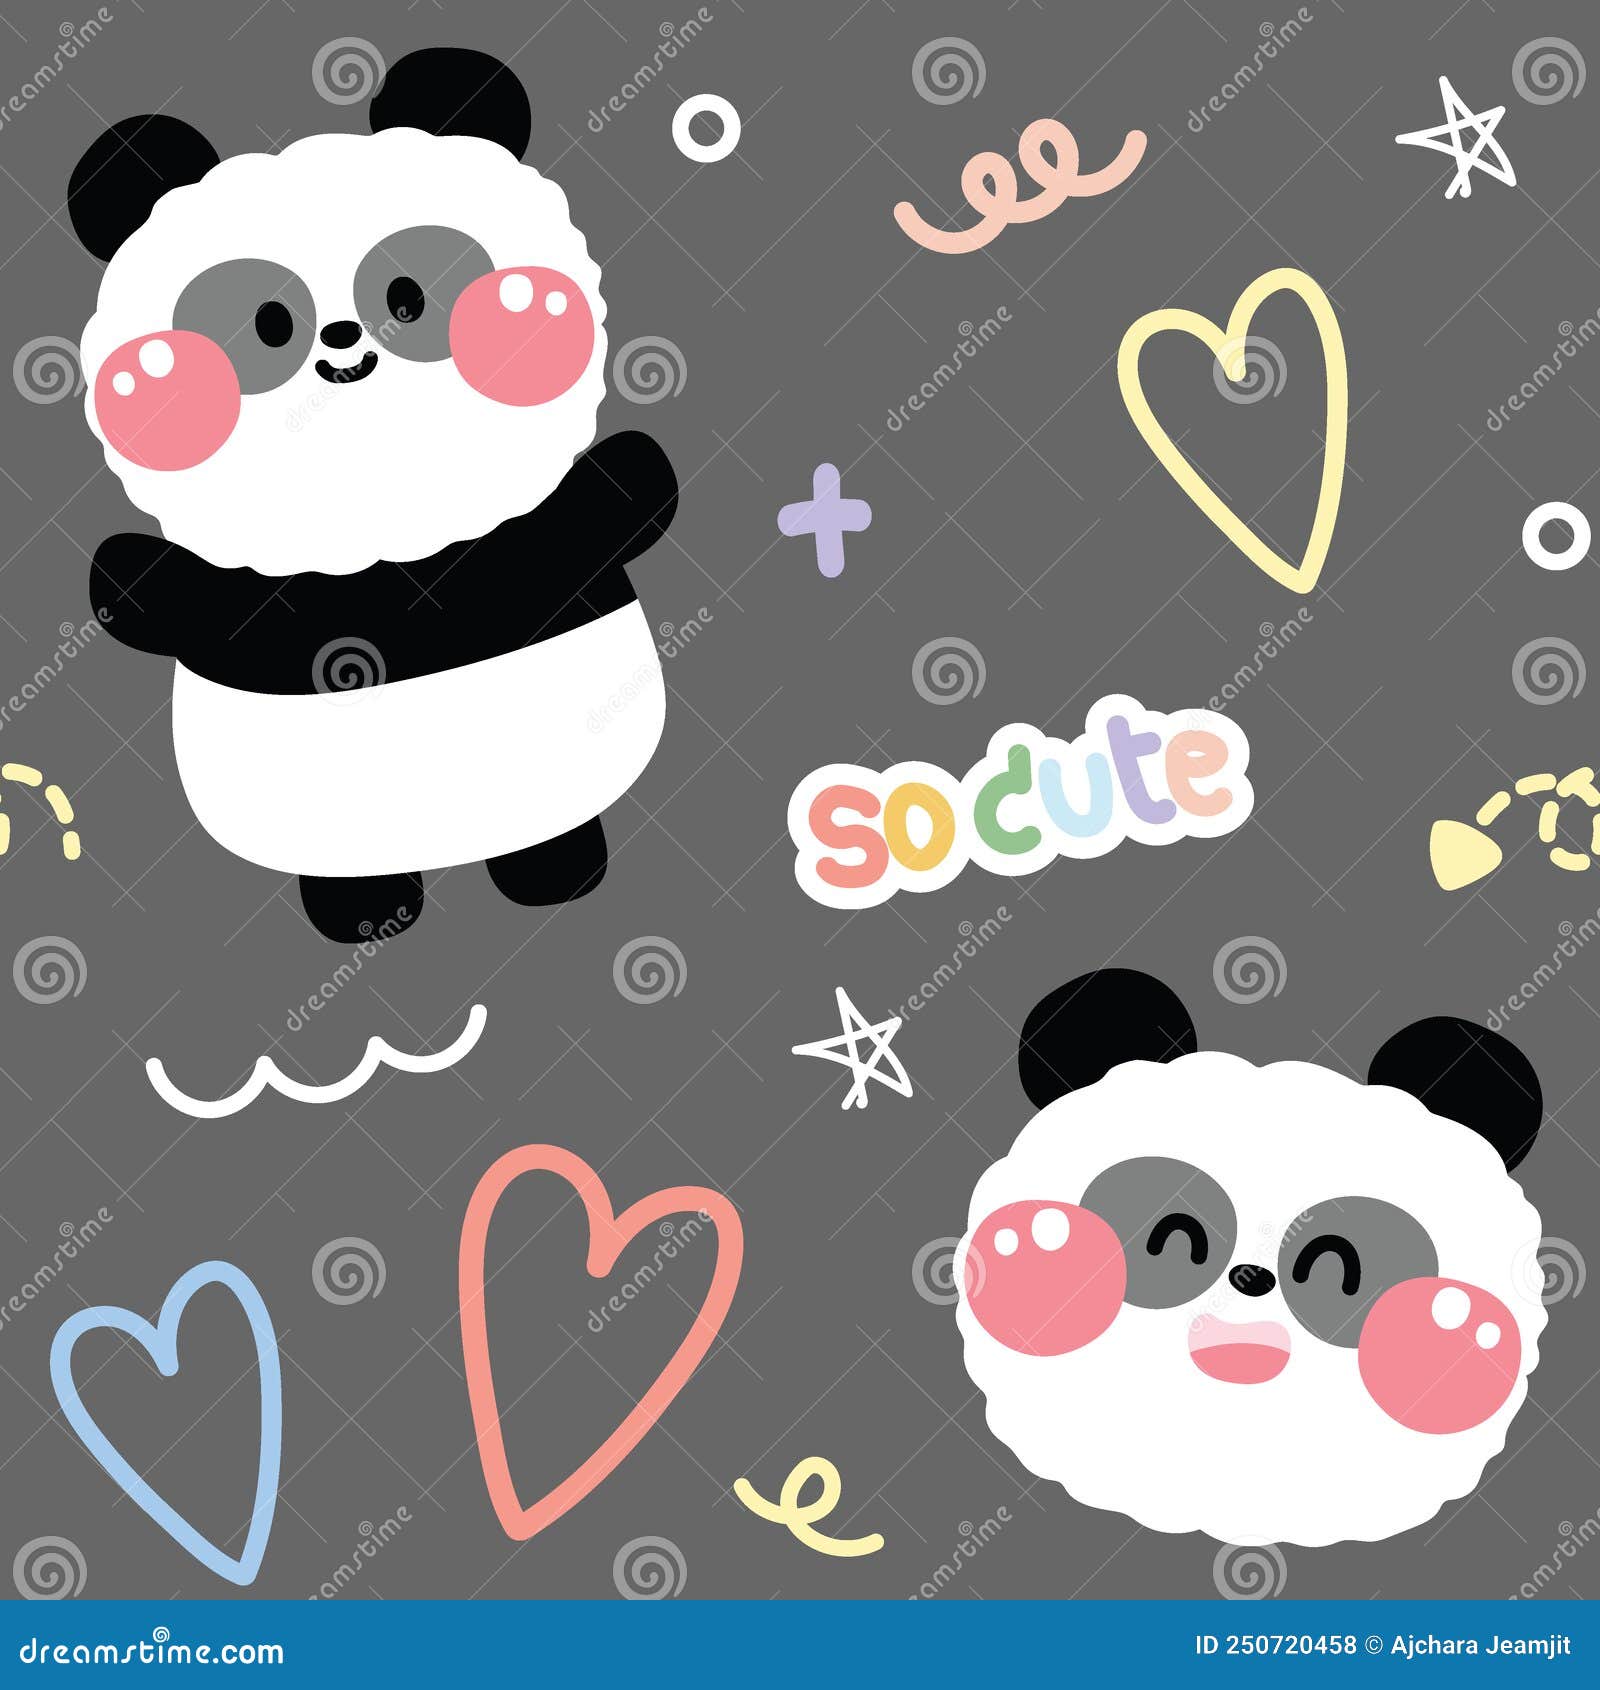 Impressões de arte de parede em tela, desenho fofo de panda